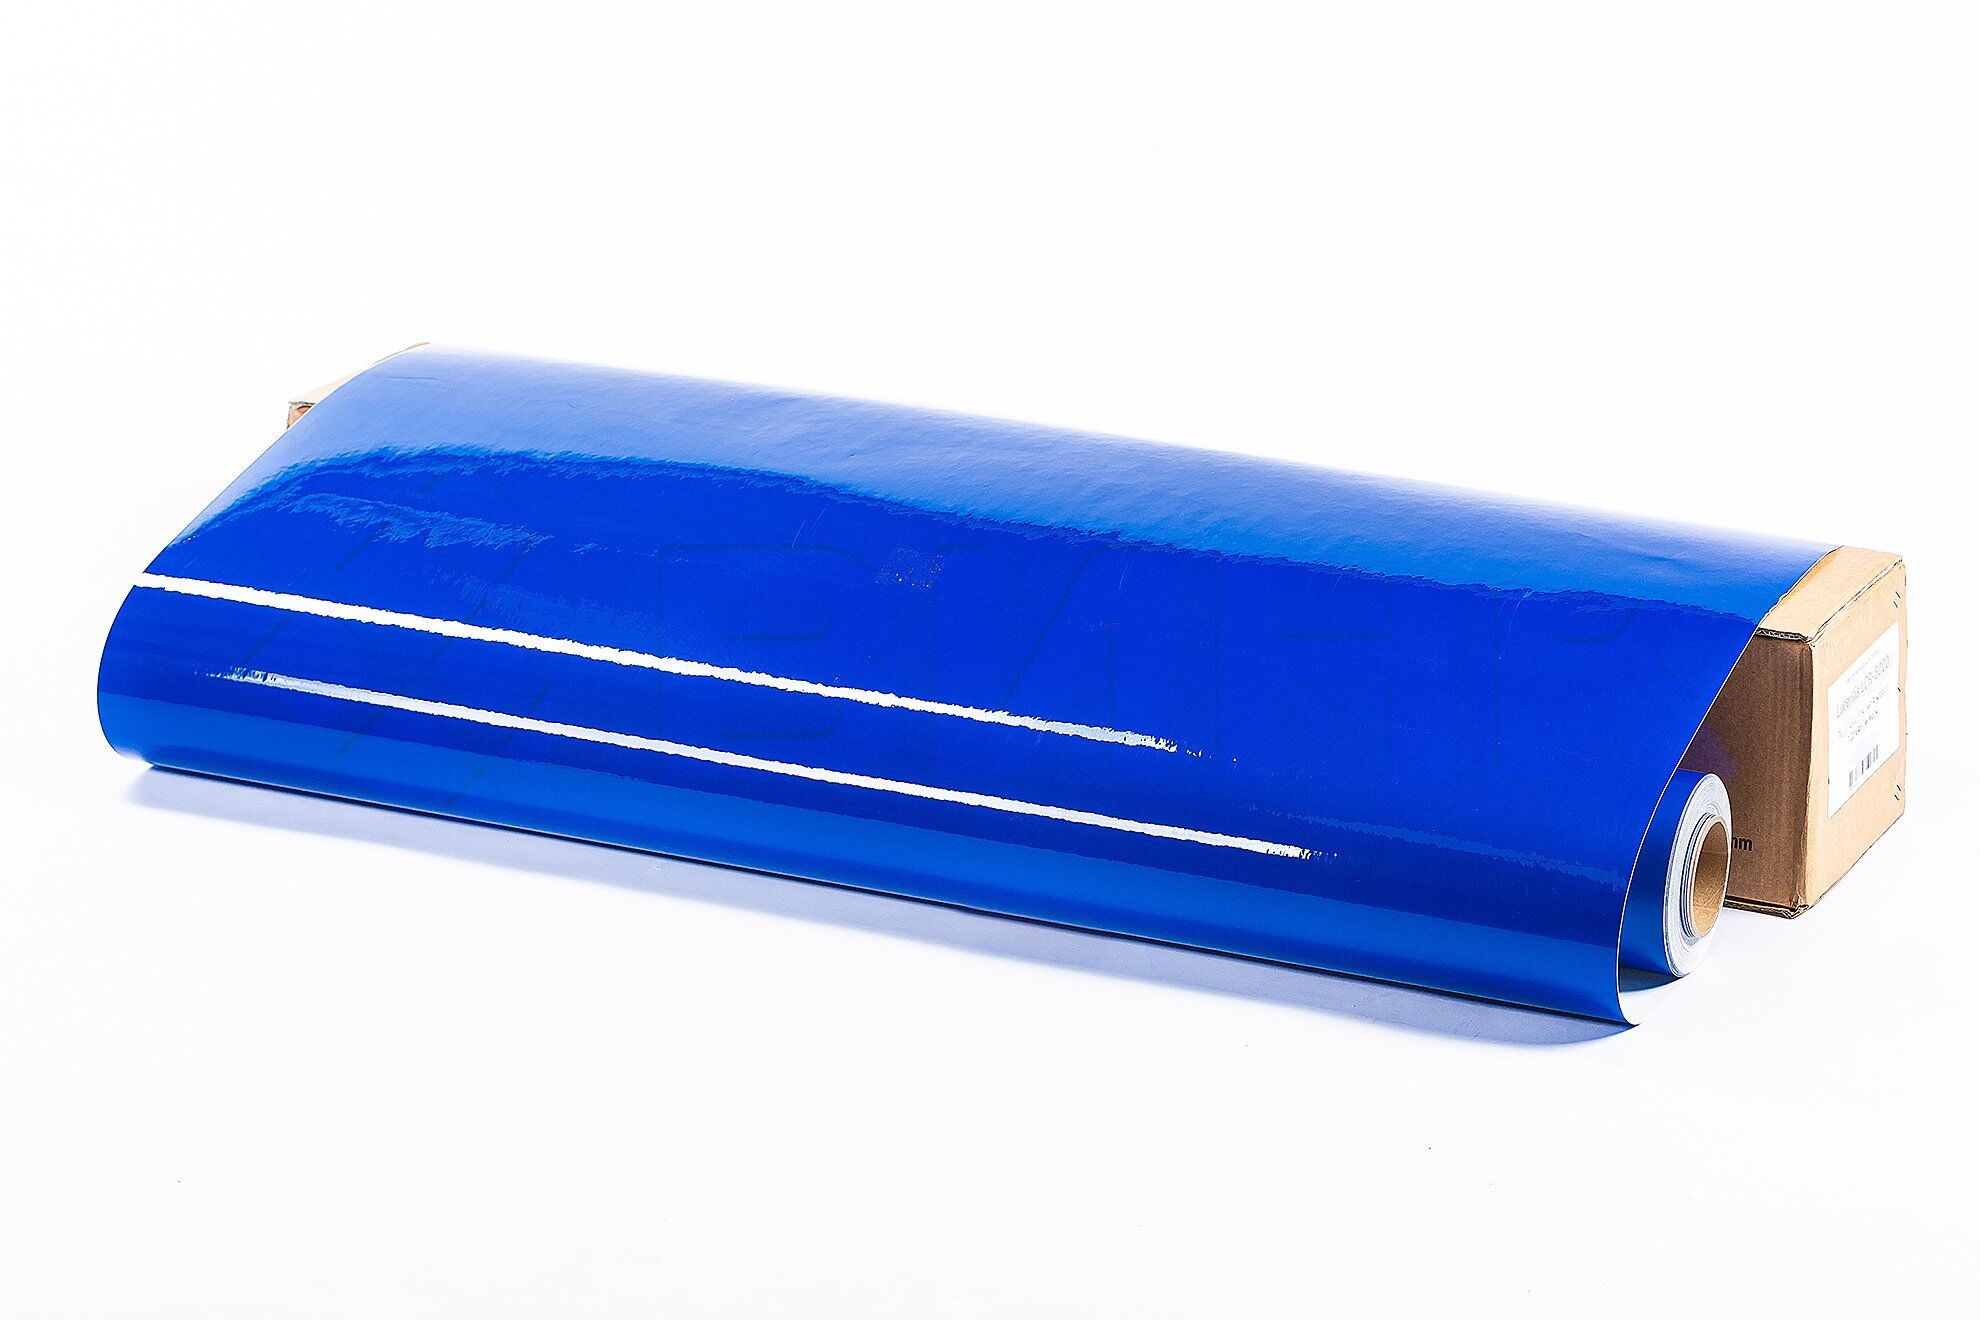 Световозвращающая пленка Lucentis LCR-5000 печатная синяя, тип А, класс I 1,22*45,7 м (с маркировкой)